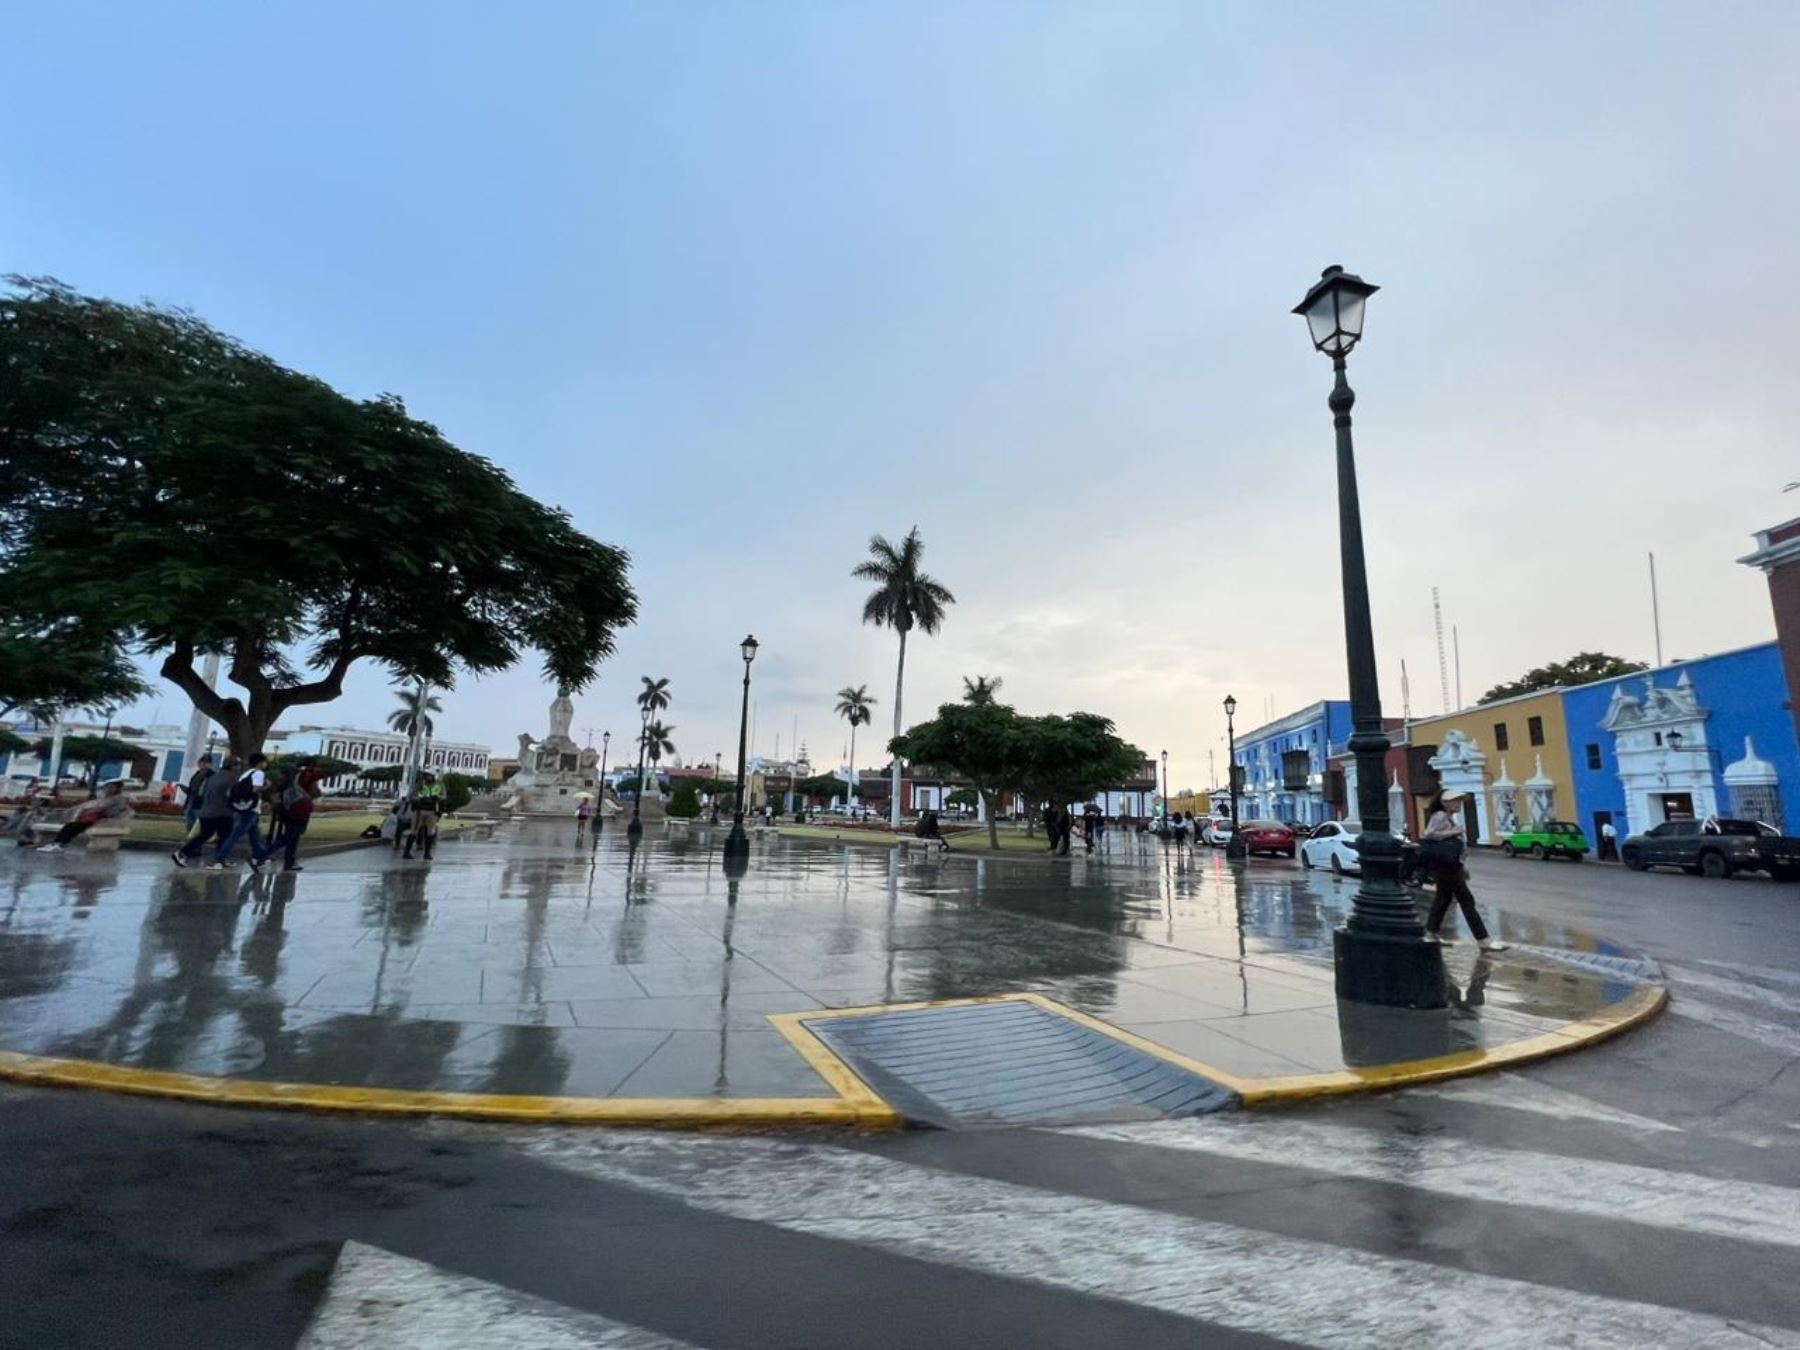 La sensación de frío se acentuará en los próximos días en la ciudad de Trujillo y la temperatura mínima llegará a 15° grados Celsius a causa de la presencia del Anticiclón del Pacífico Sur, advirtió el Senamhi. FOTO: Luis Puell